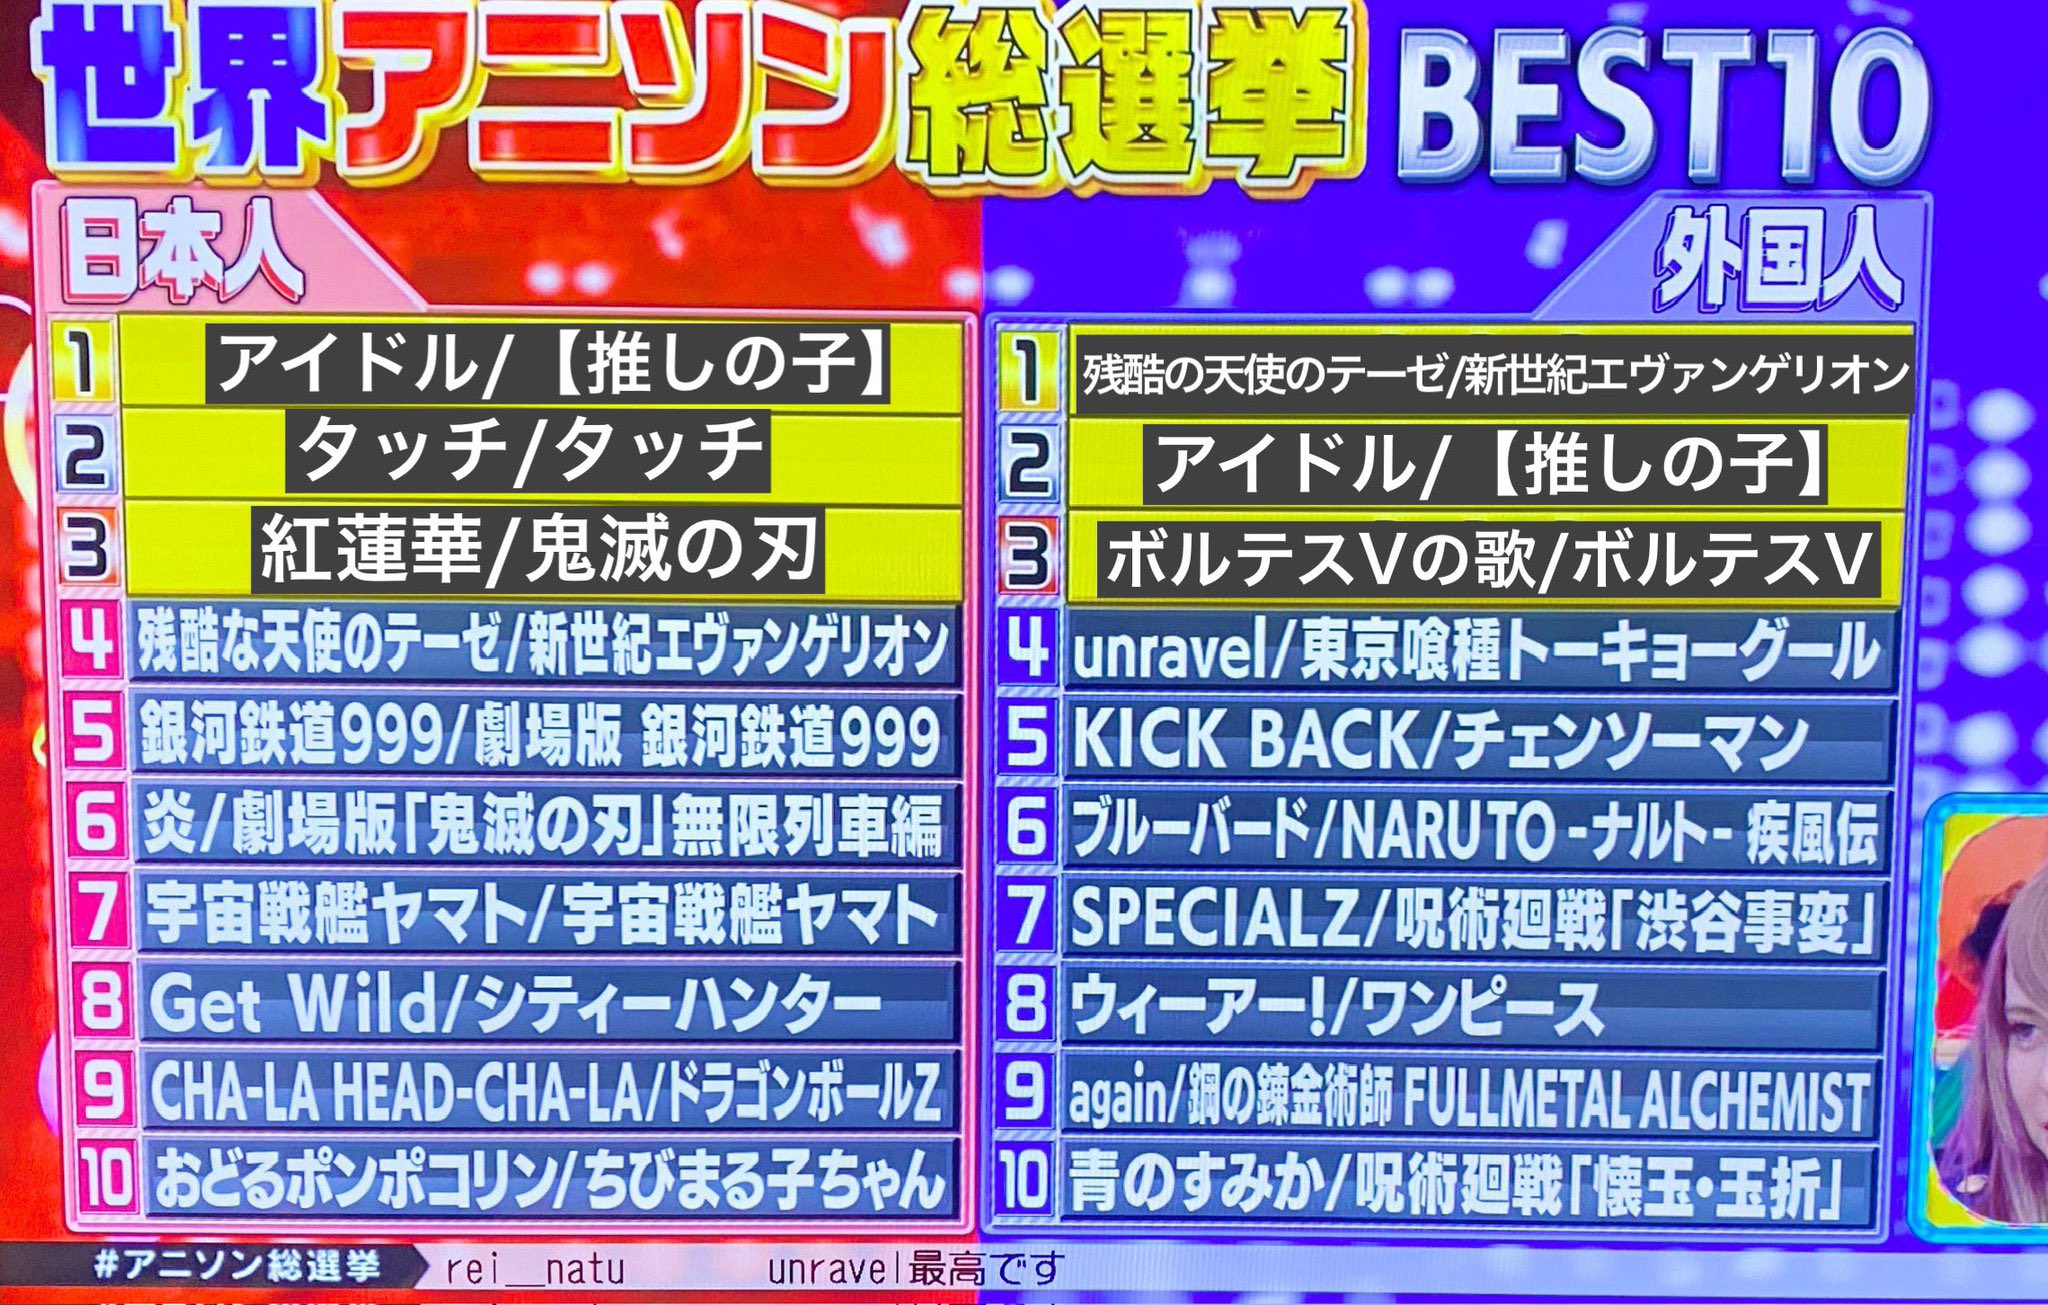 日本朝日電視臺票選動漫歌曲排行 外國人最愛《殘酷天使的日本行動綱領》